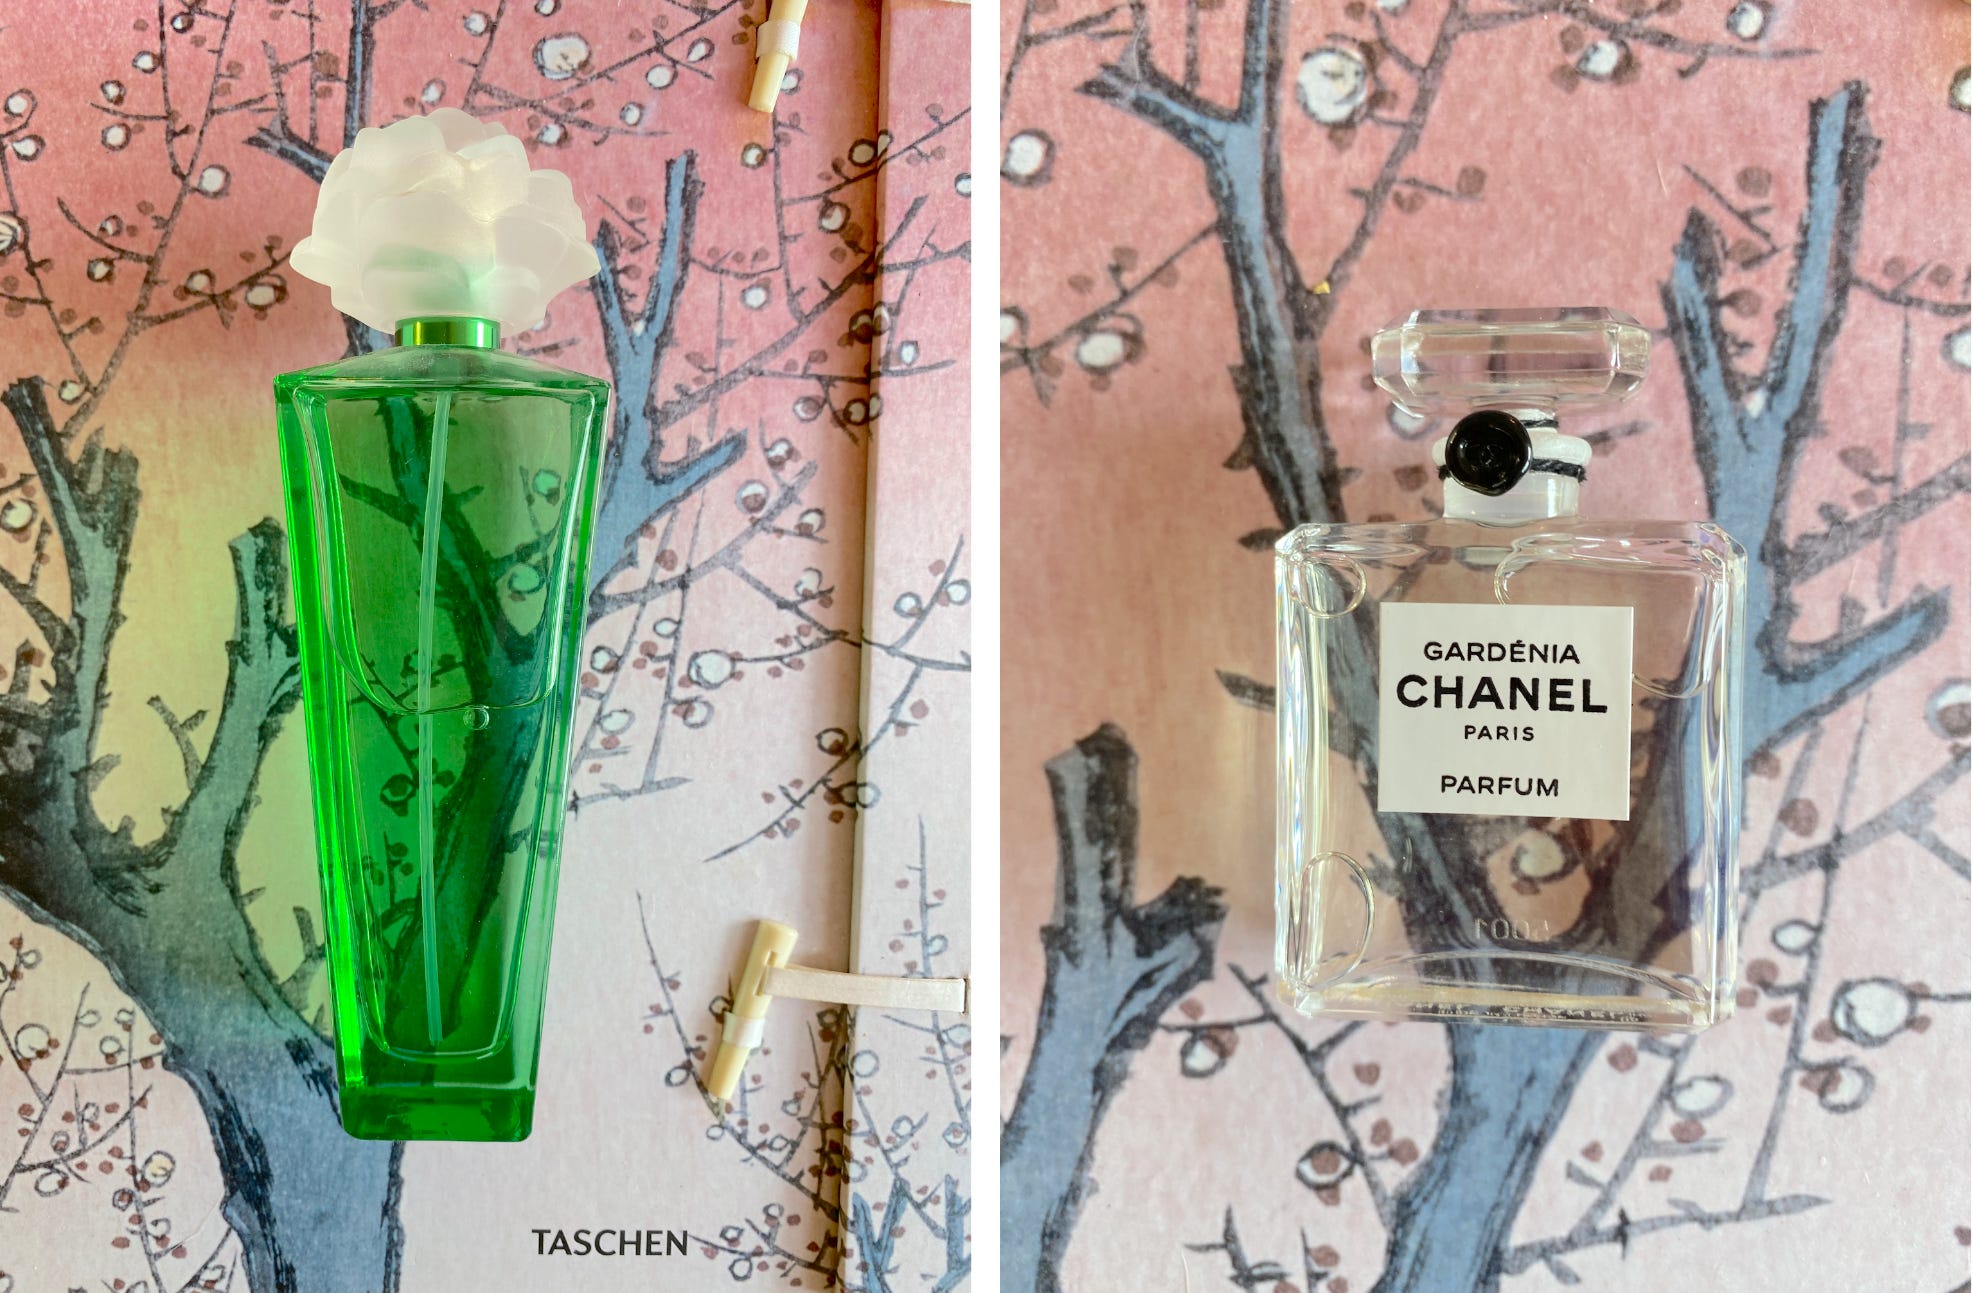 Lily-Rose Depp Chanel No.5 L'eau Campaign